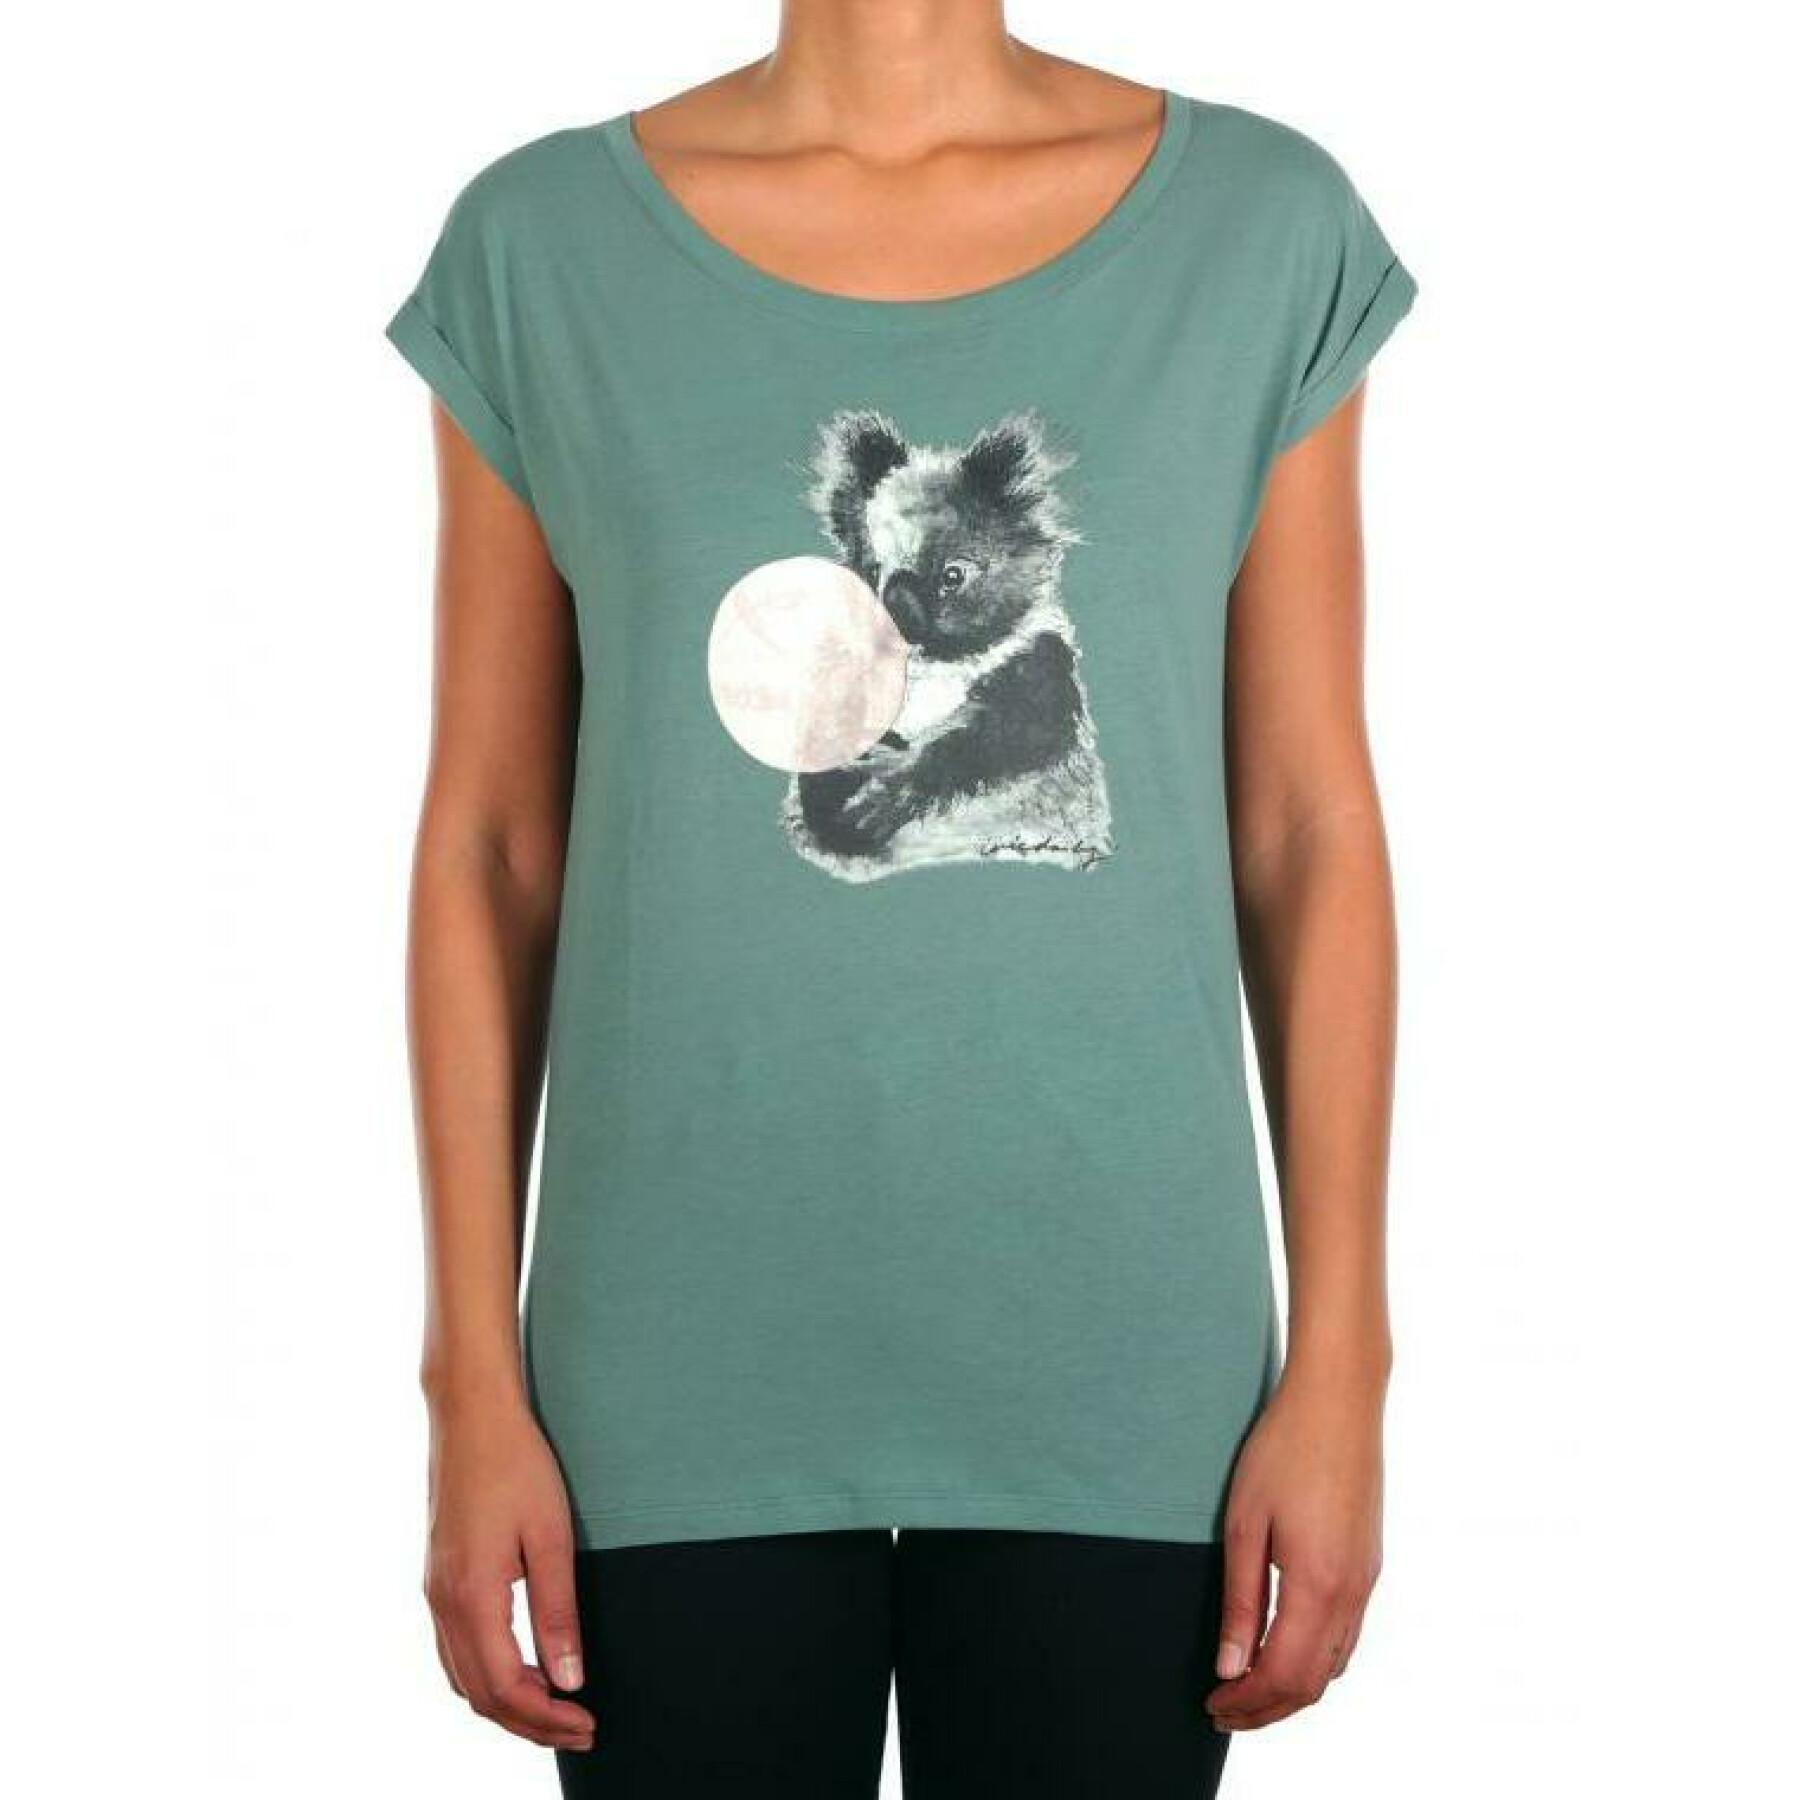 Koala-Luftpolster-T-Shirt, Damen Iriedaily